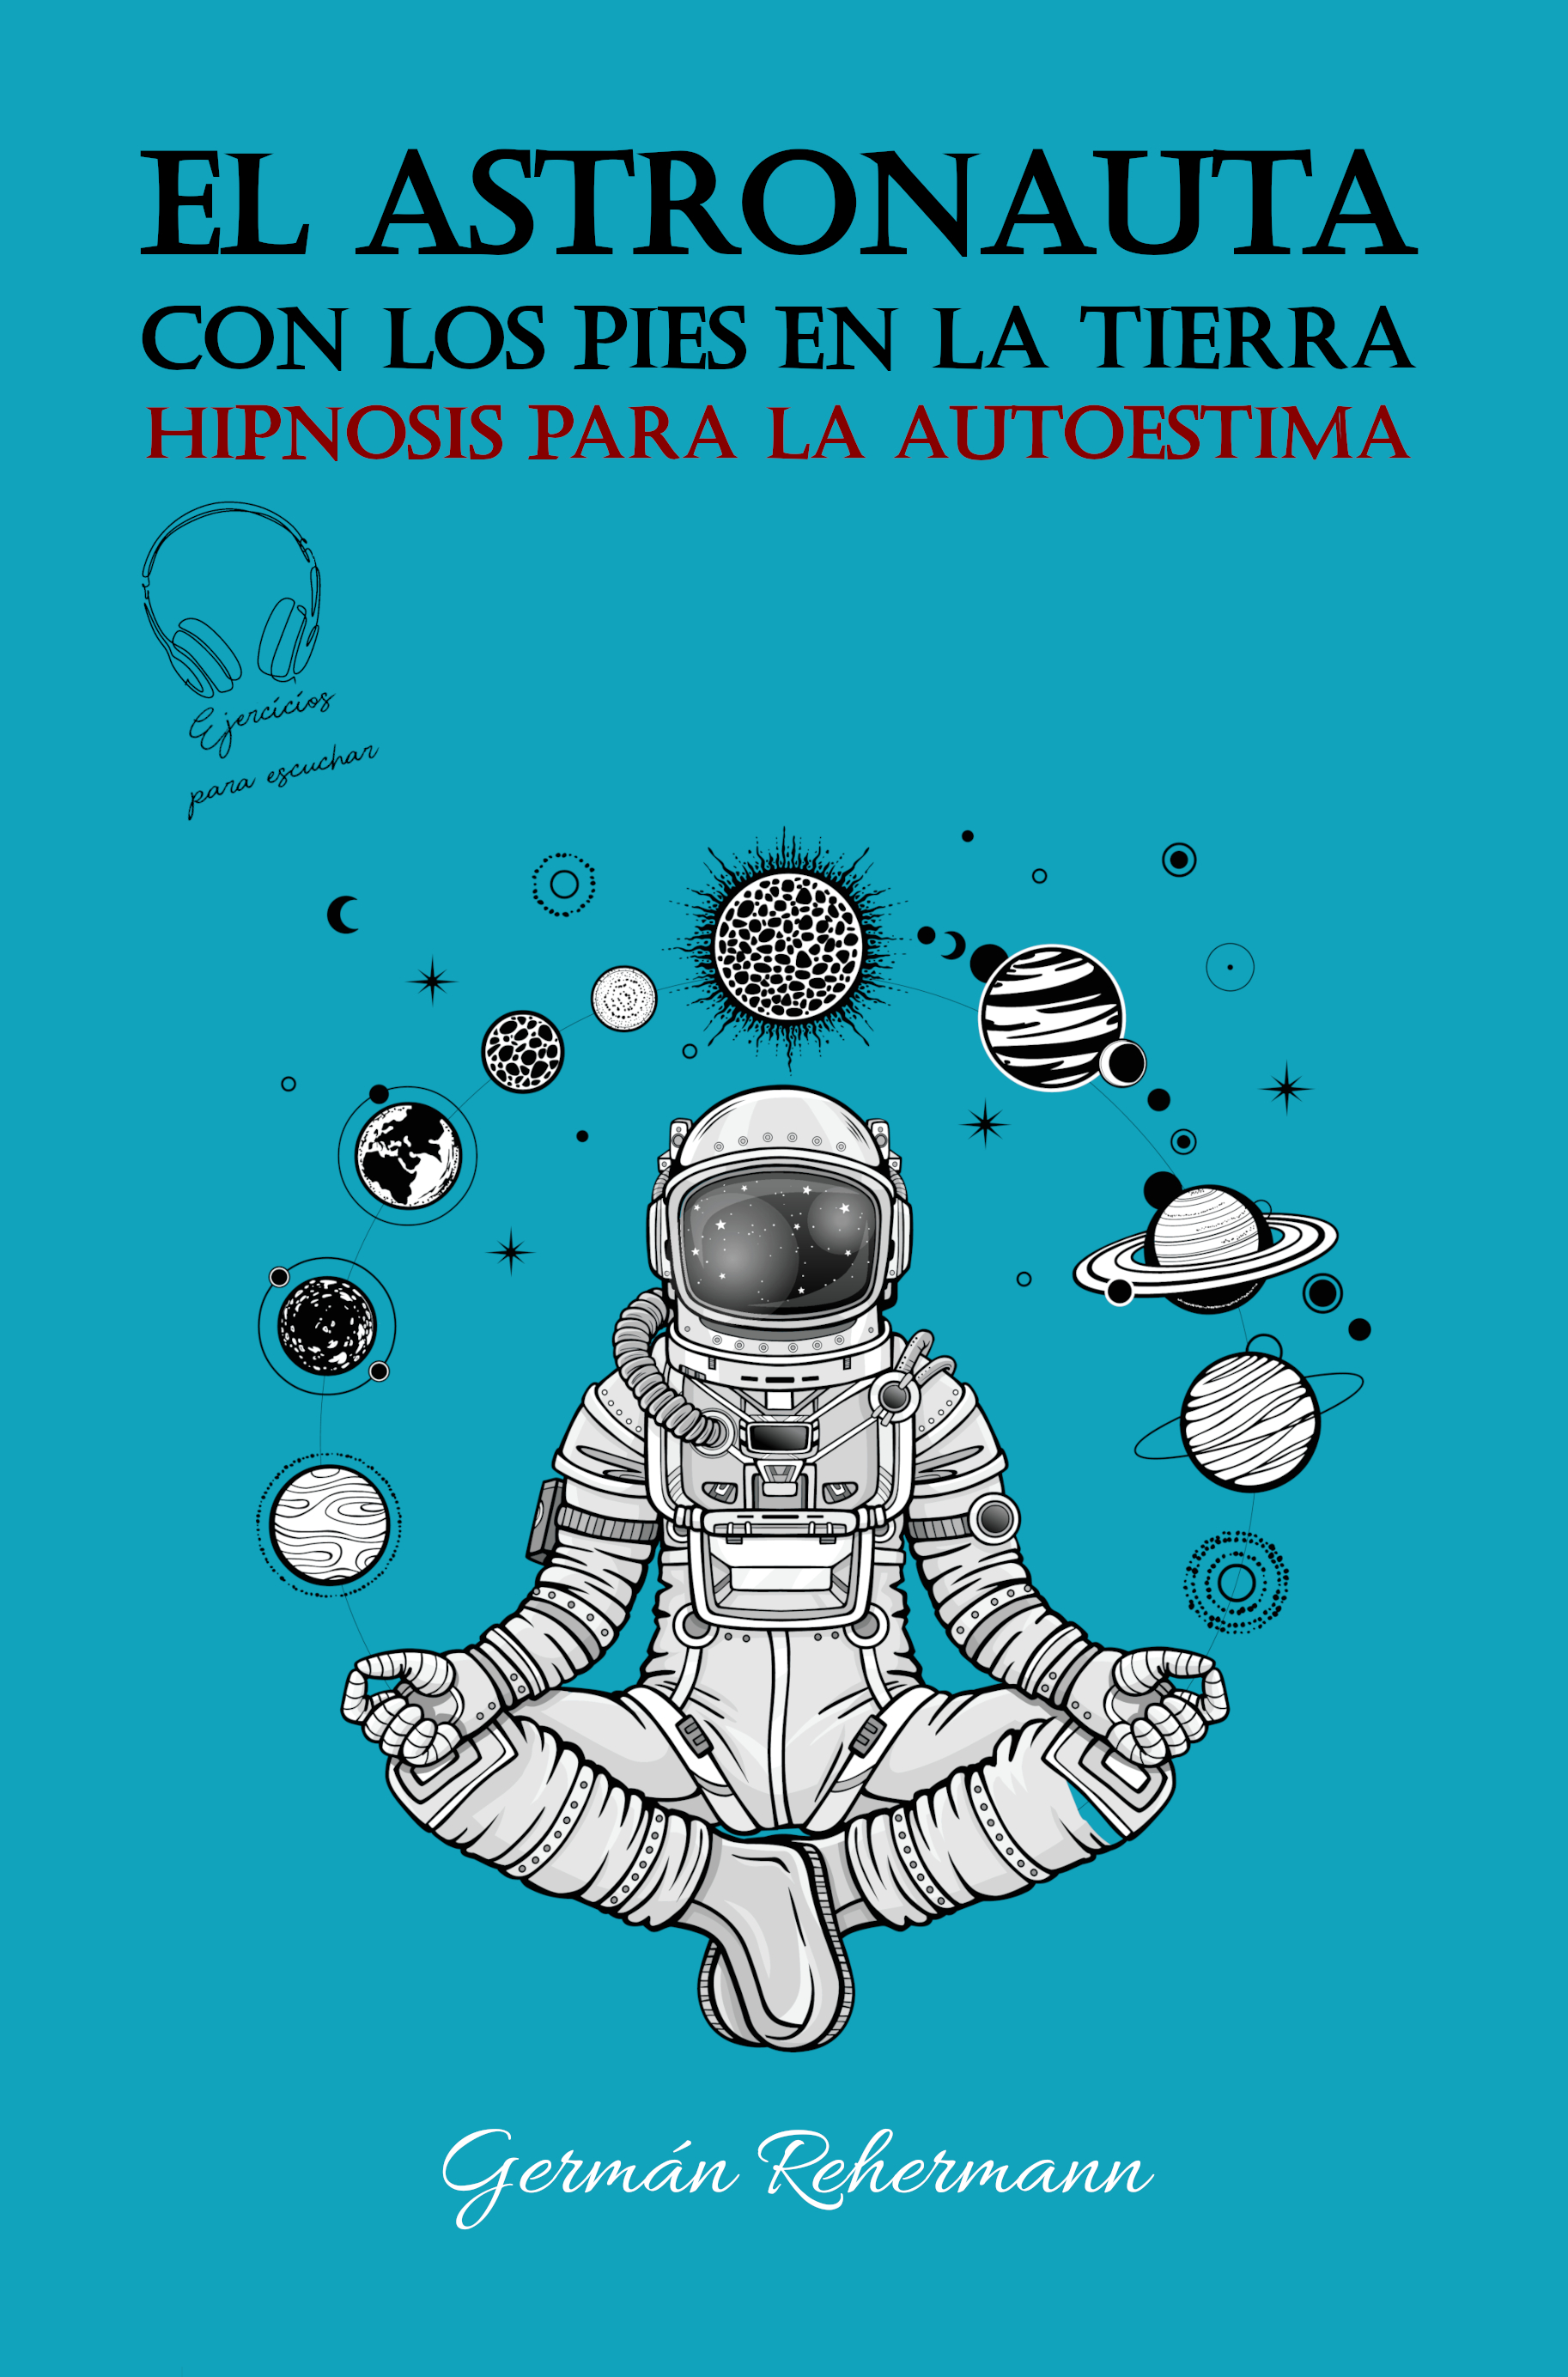 portada del libro "El astronauta con los pies en la tierra"